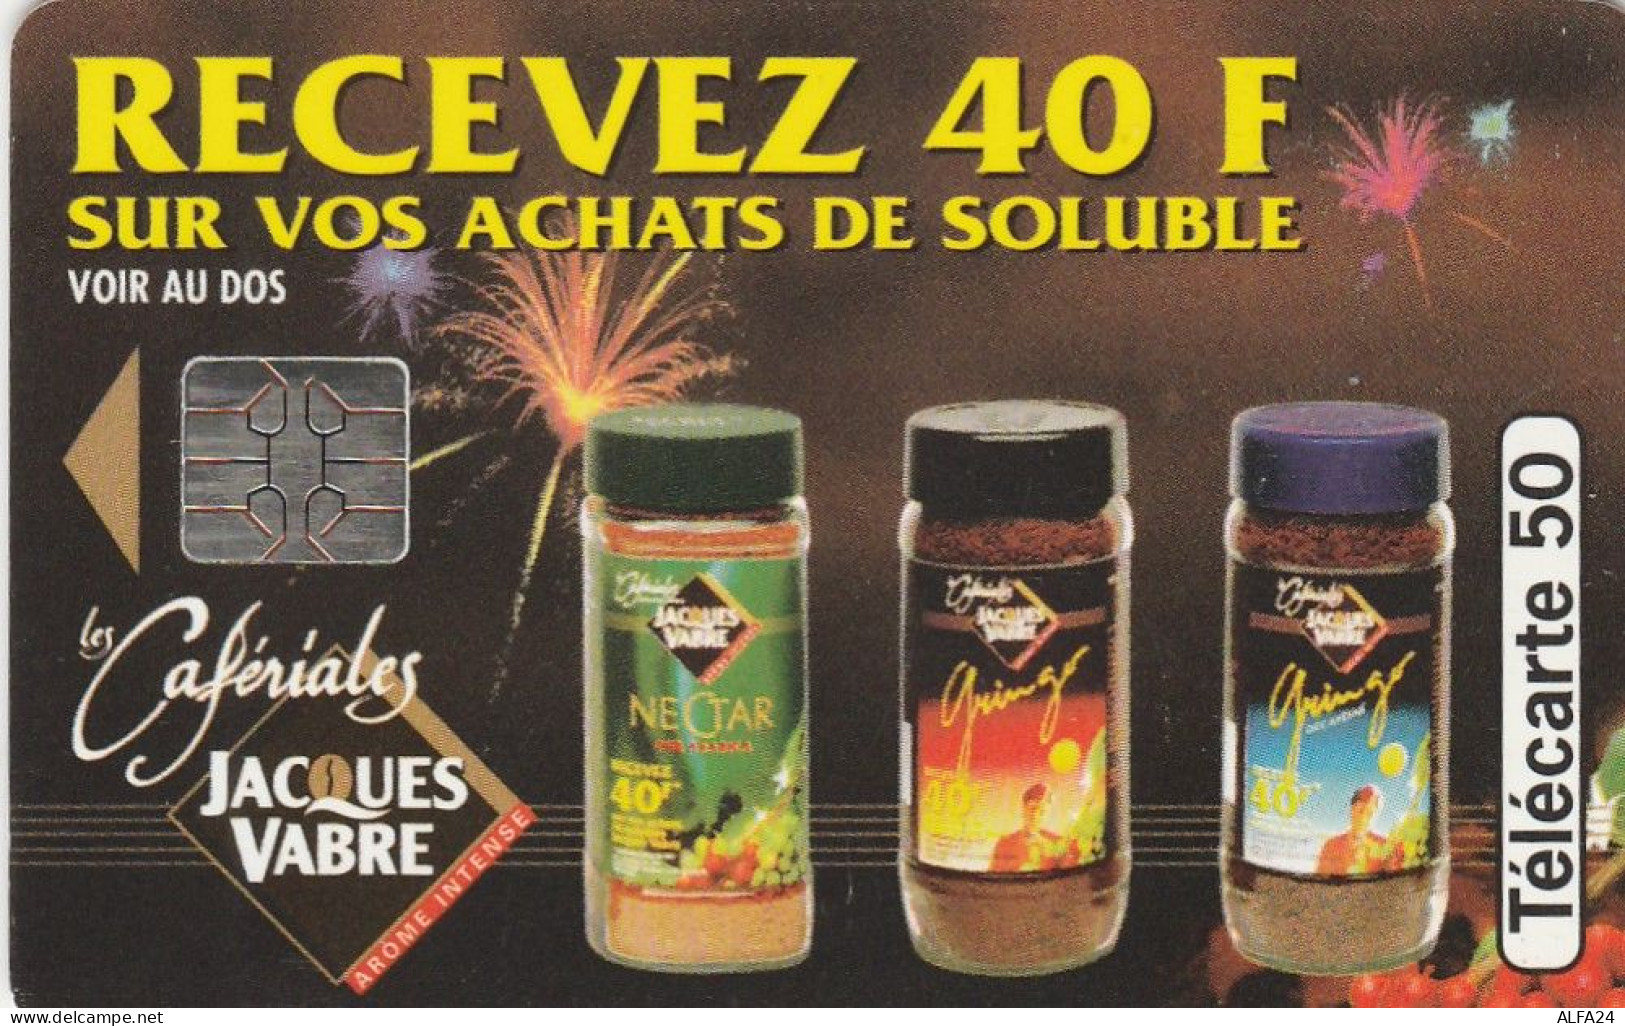 TELECARTE F469A CAFERALIES VABRE - 1994